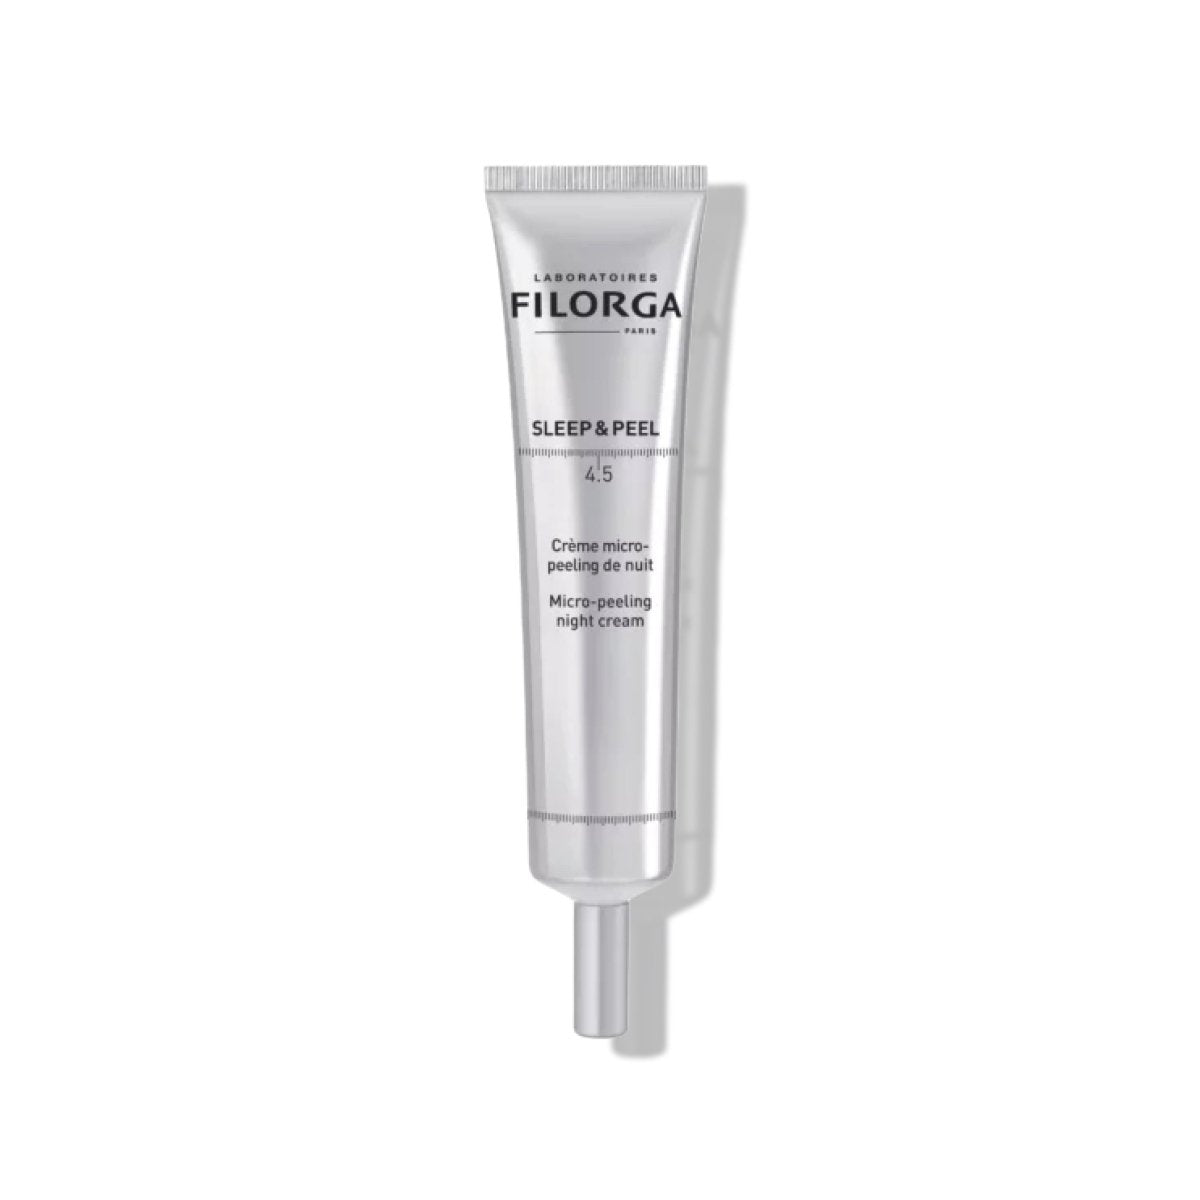 Filorga - Sleep & Peel 4.5 40ml - SkincareEssentials